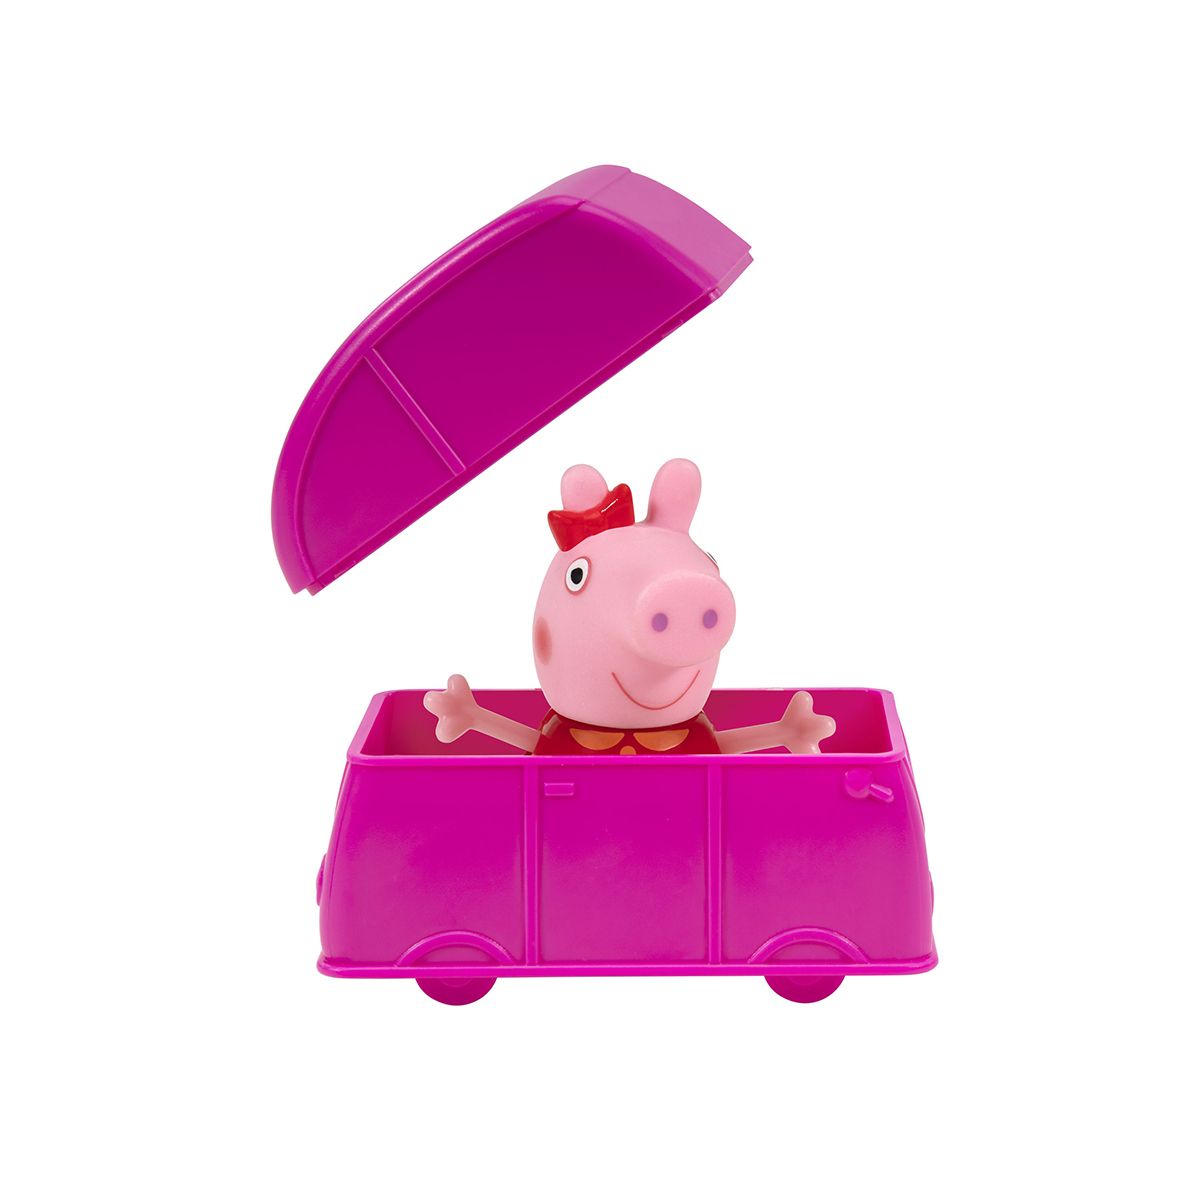 Figurka Tm Toys Peppa Pig blind auto (PEP00690)